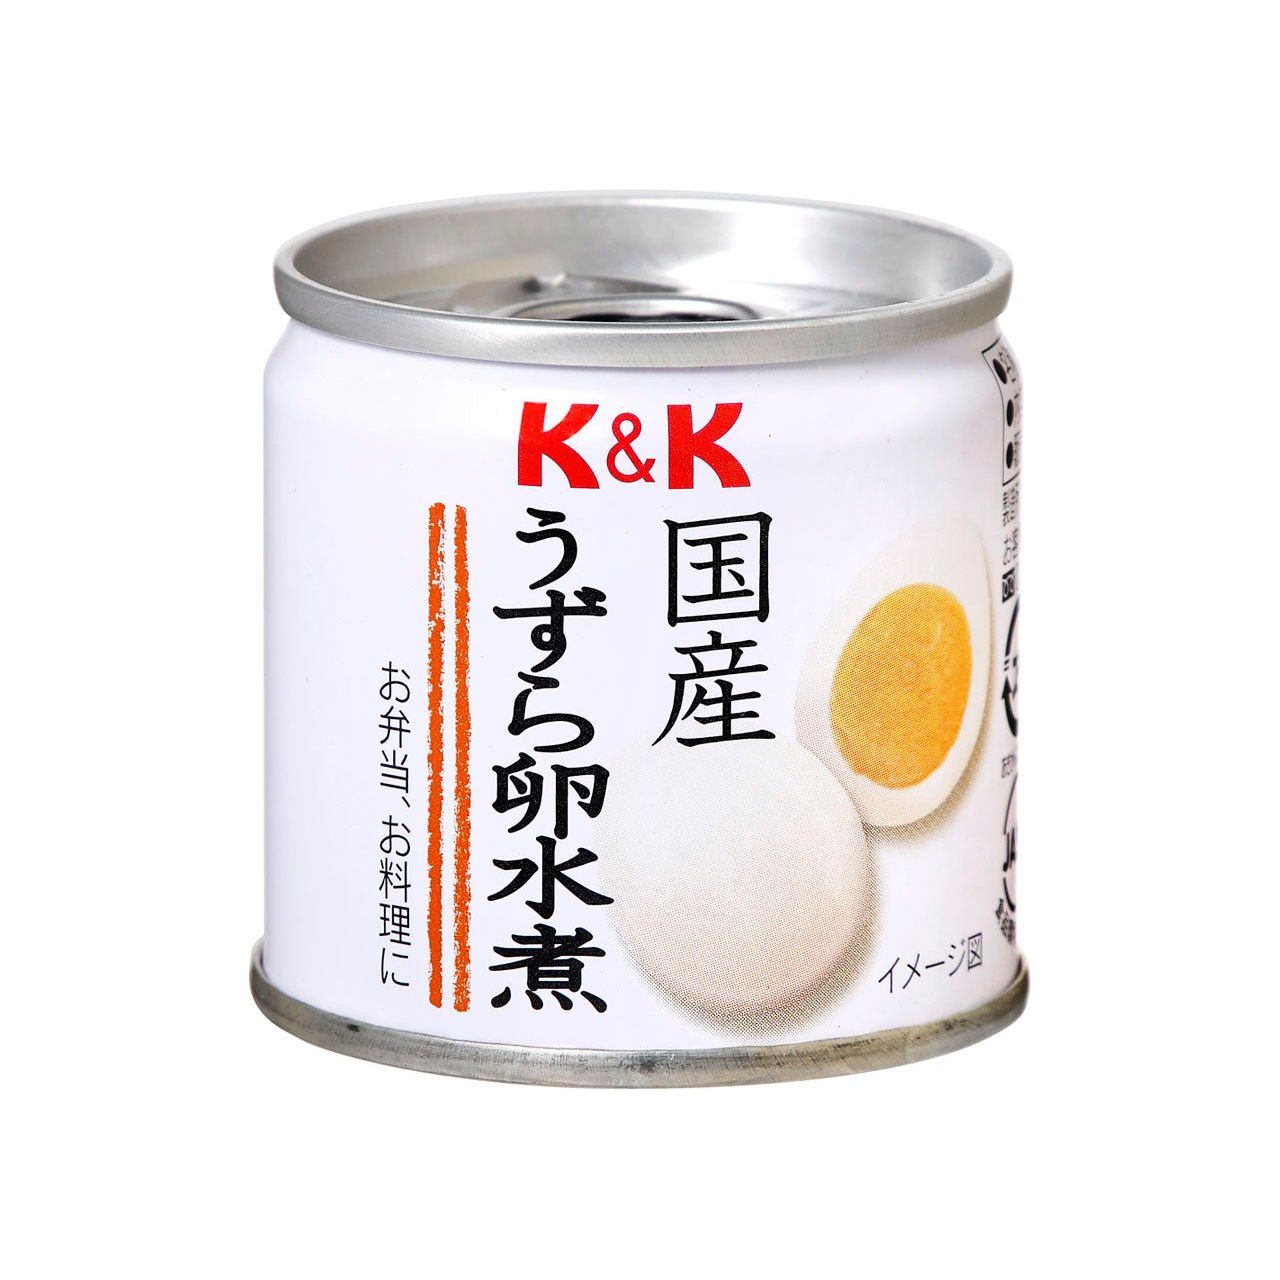 K & K 국내 비행 달걀 음식이 끓었다